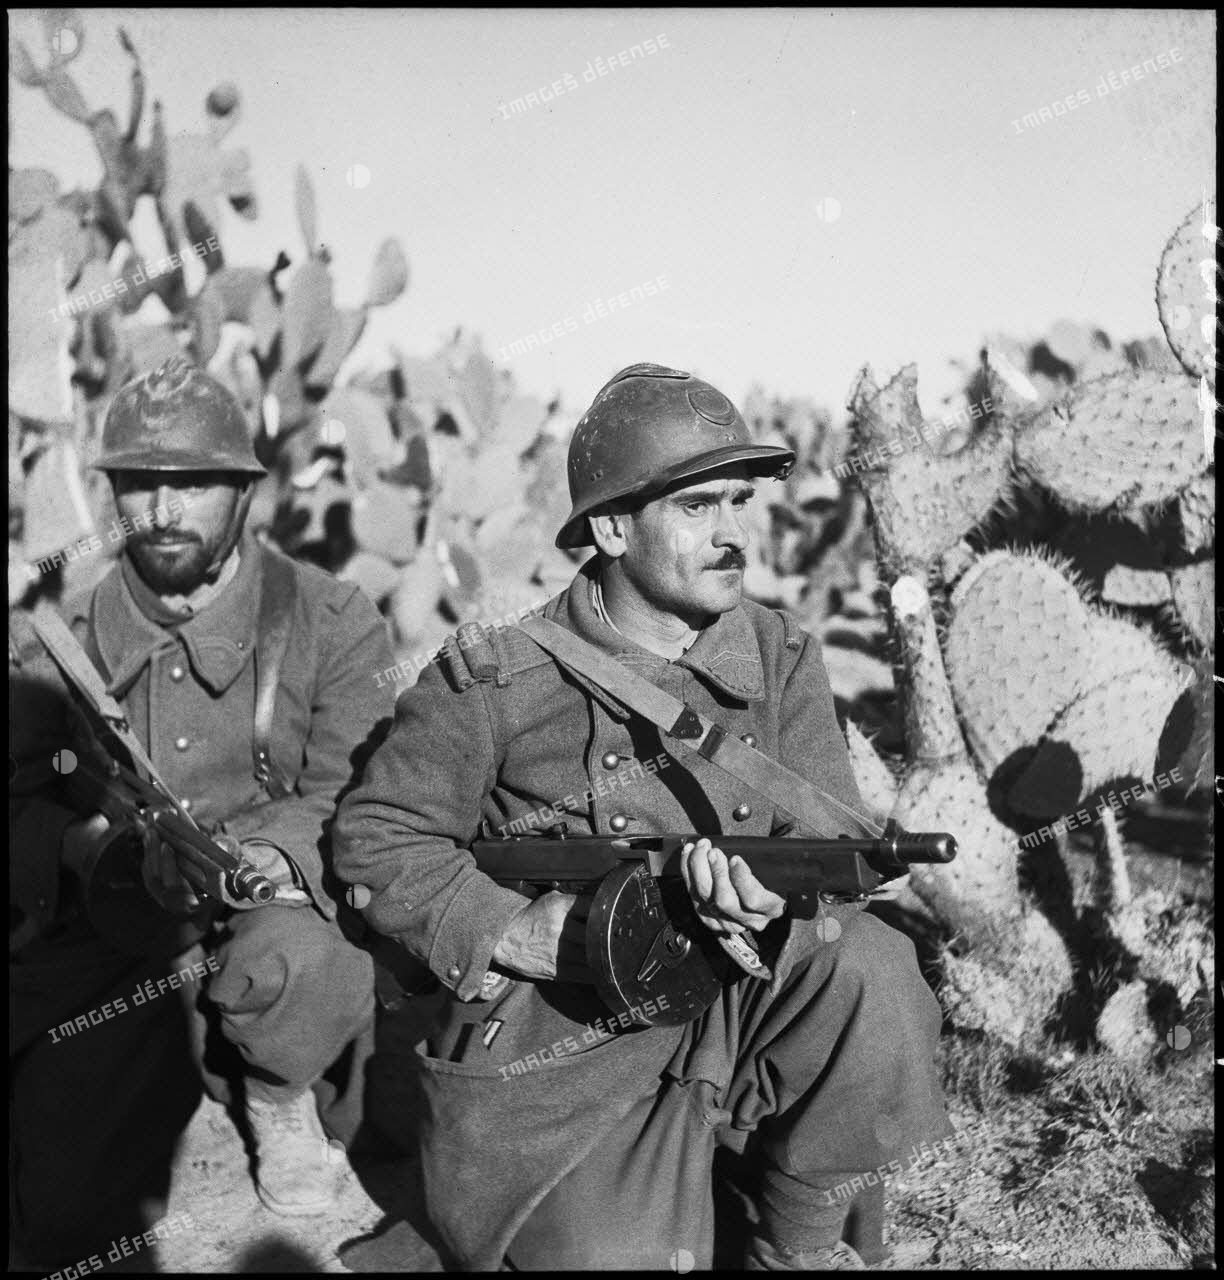 Tirailleurs du 9e RTA (régiment de tirailleurs algériens) de la DMC (Division de marche de Constantine) armés de pistolets-mitrailleurs Thompson M1 avec chargeur circulaire, postés au milieu de cactus.